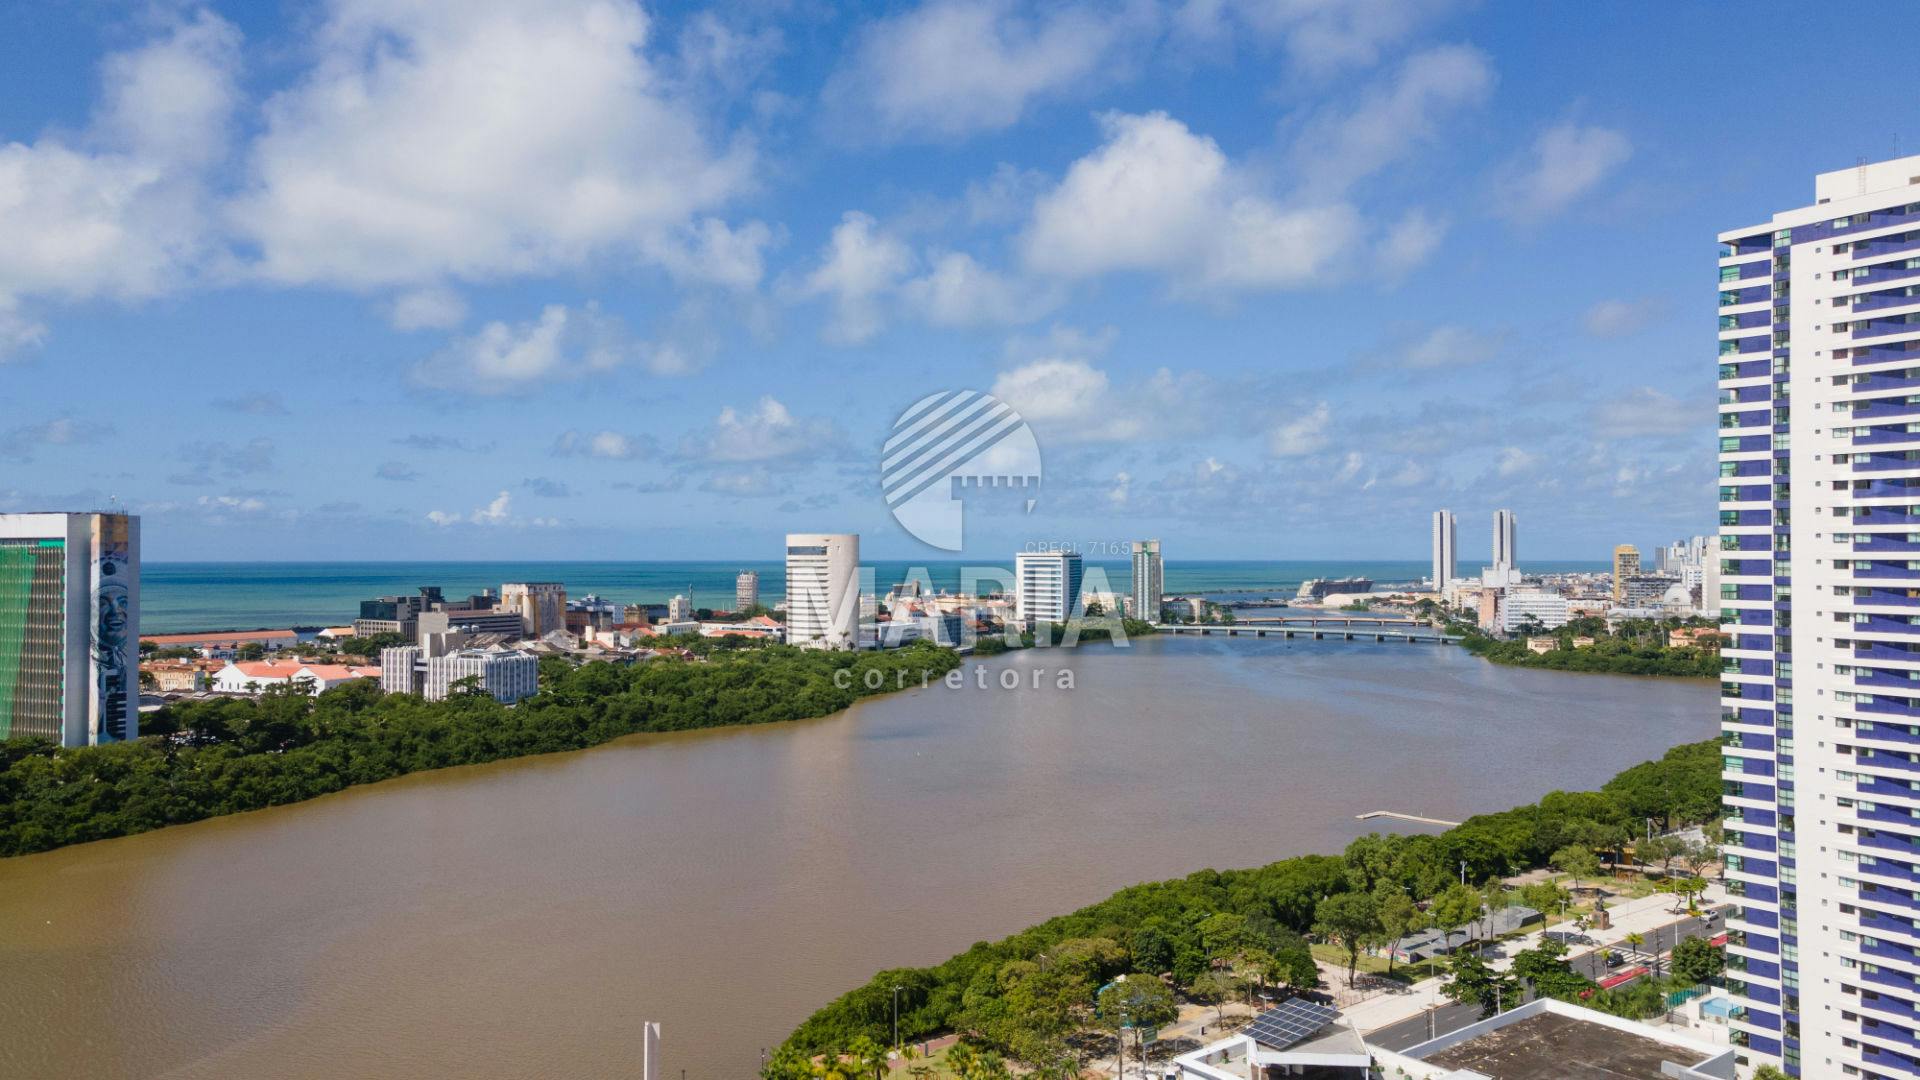 Lançamento - Aurora Prince! Pimeiro Home Resort de Recife/PE! A partir de 1.242.000,00! 